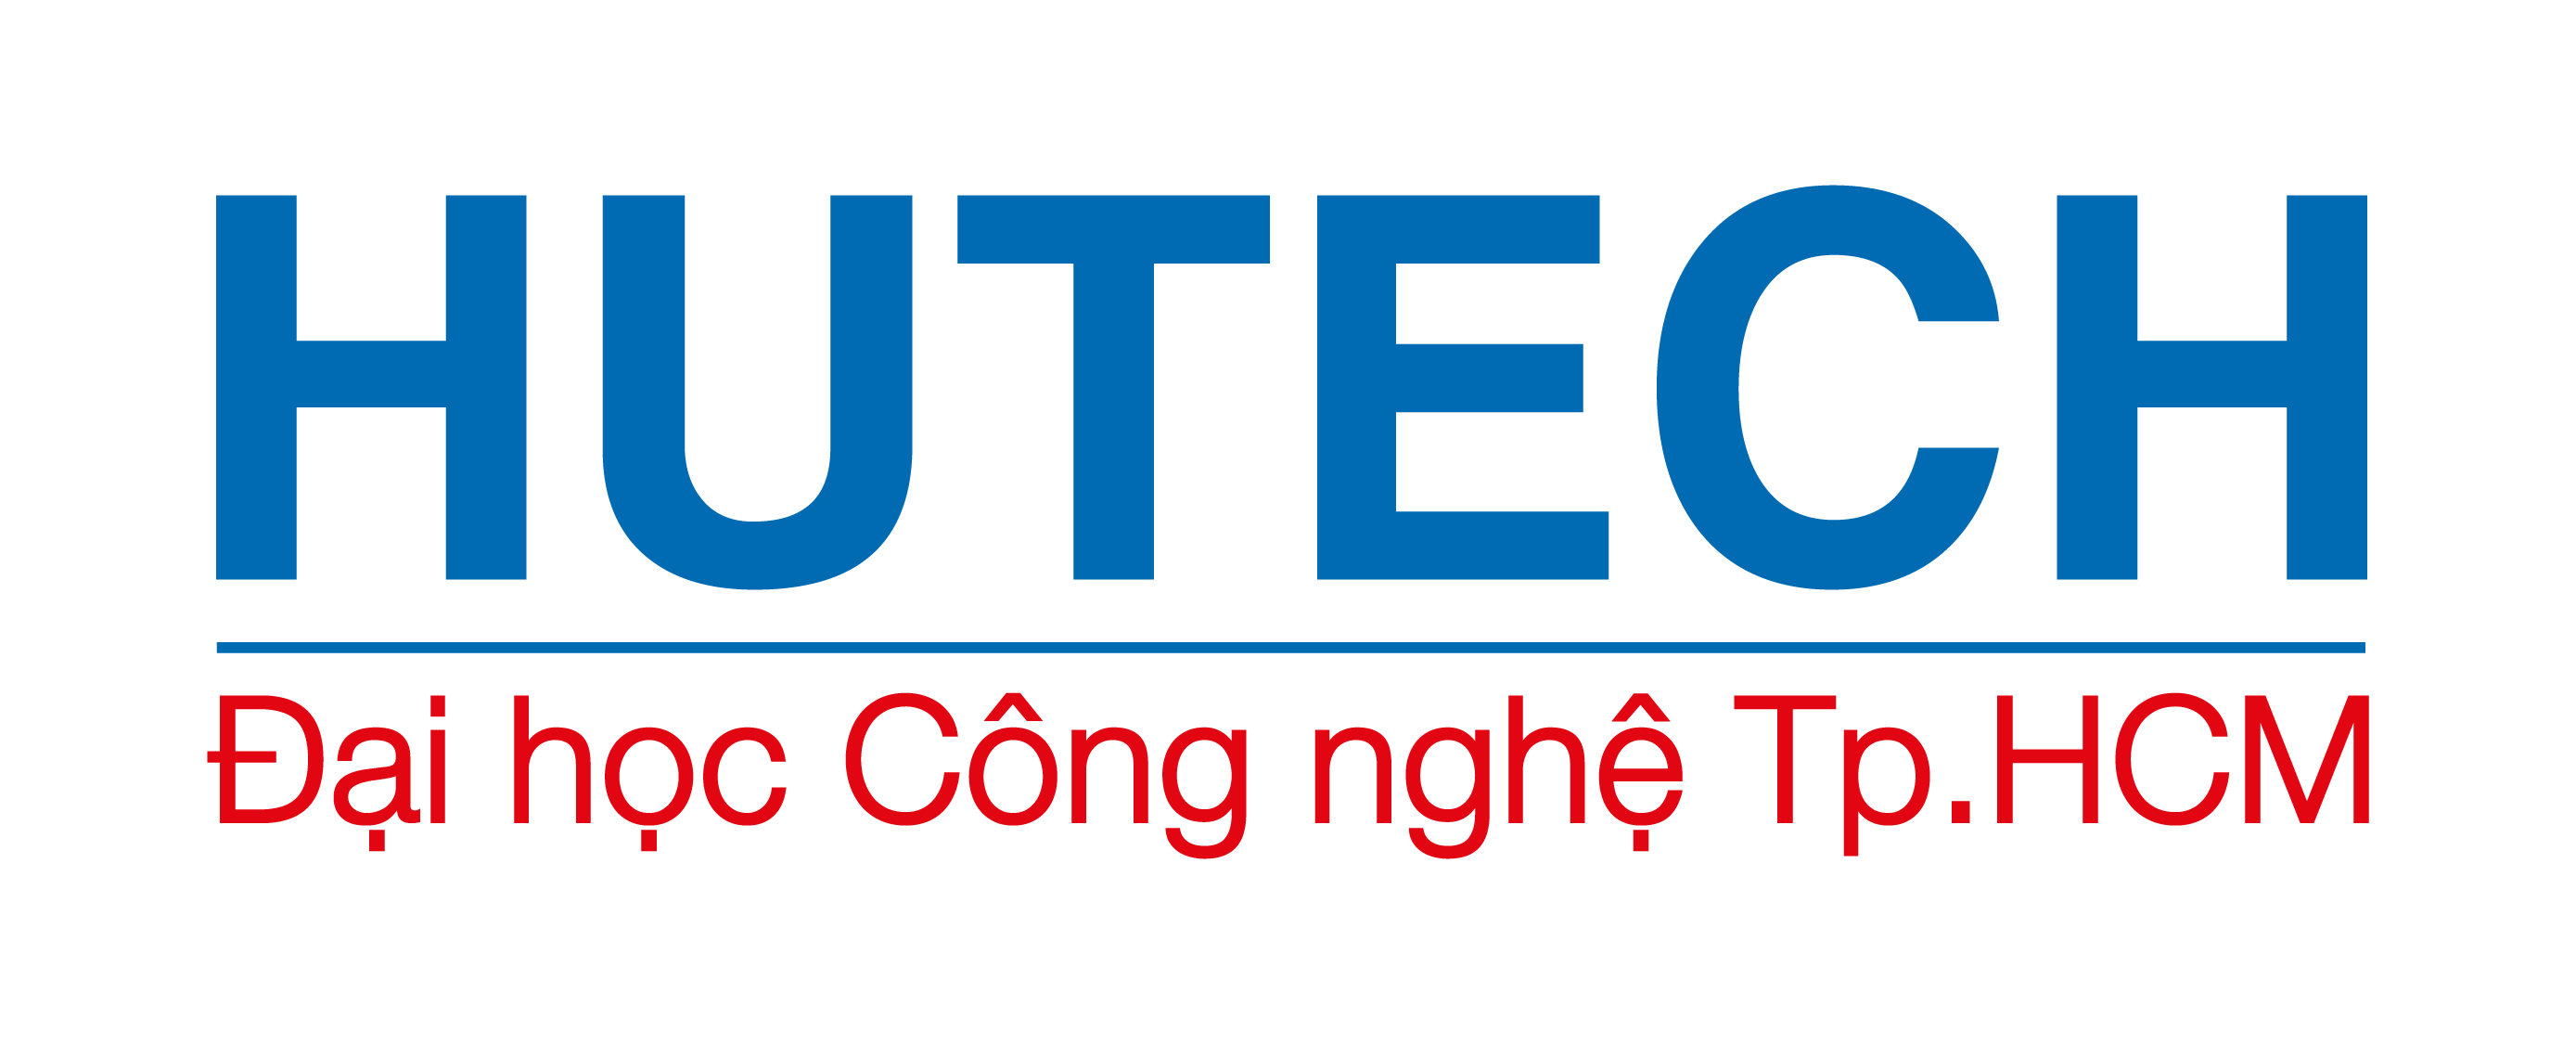 Ý nghĩa logo Đại học Công nghệ Tp.HCM (HUTECH) 41